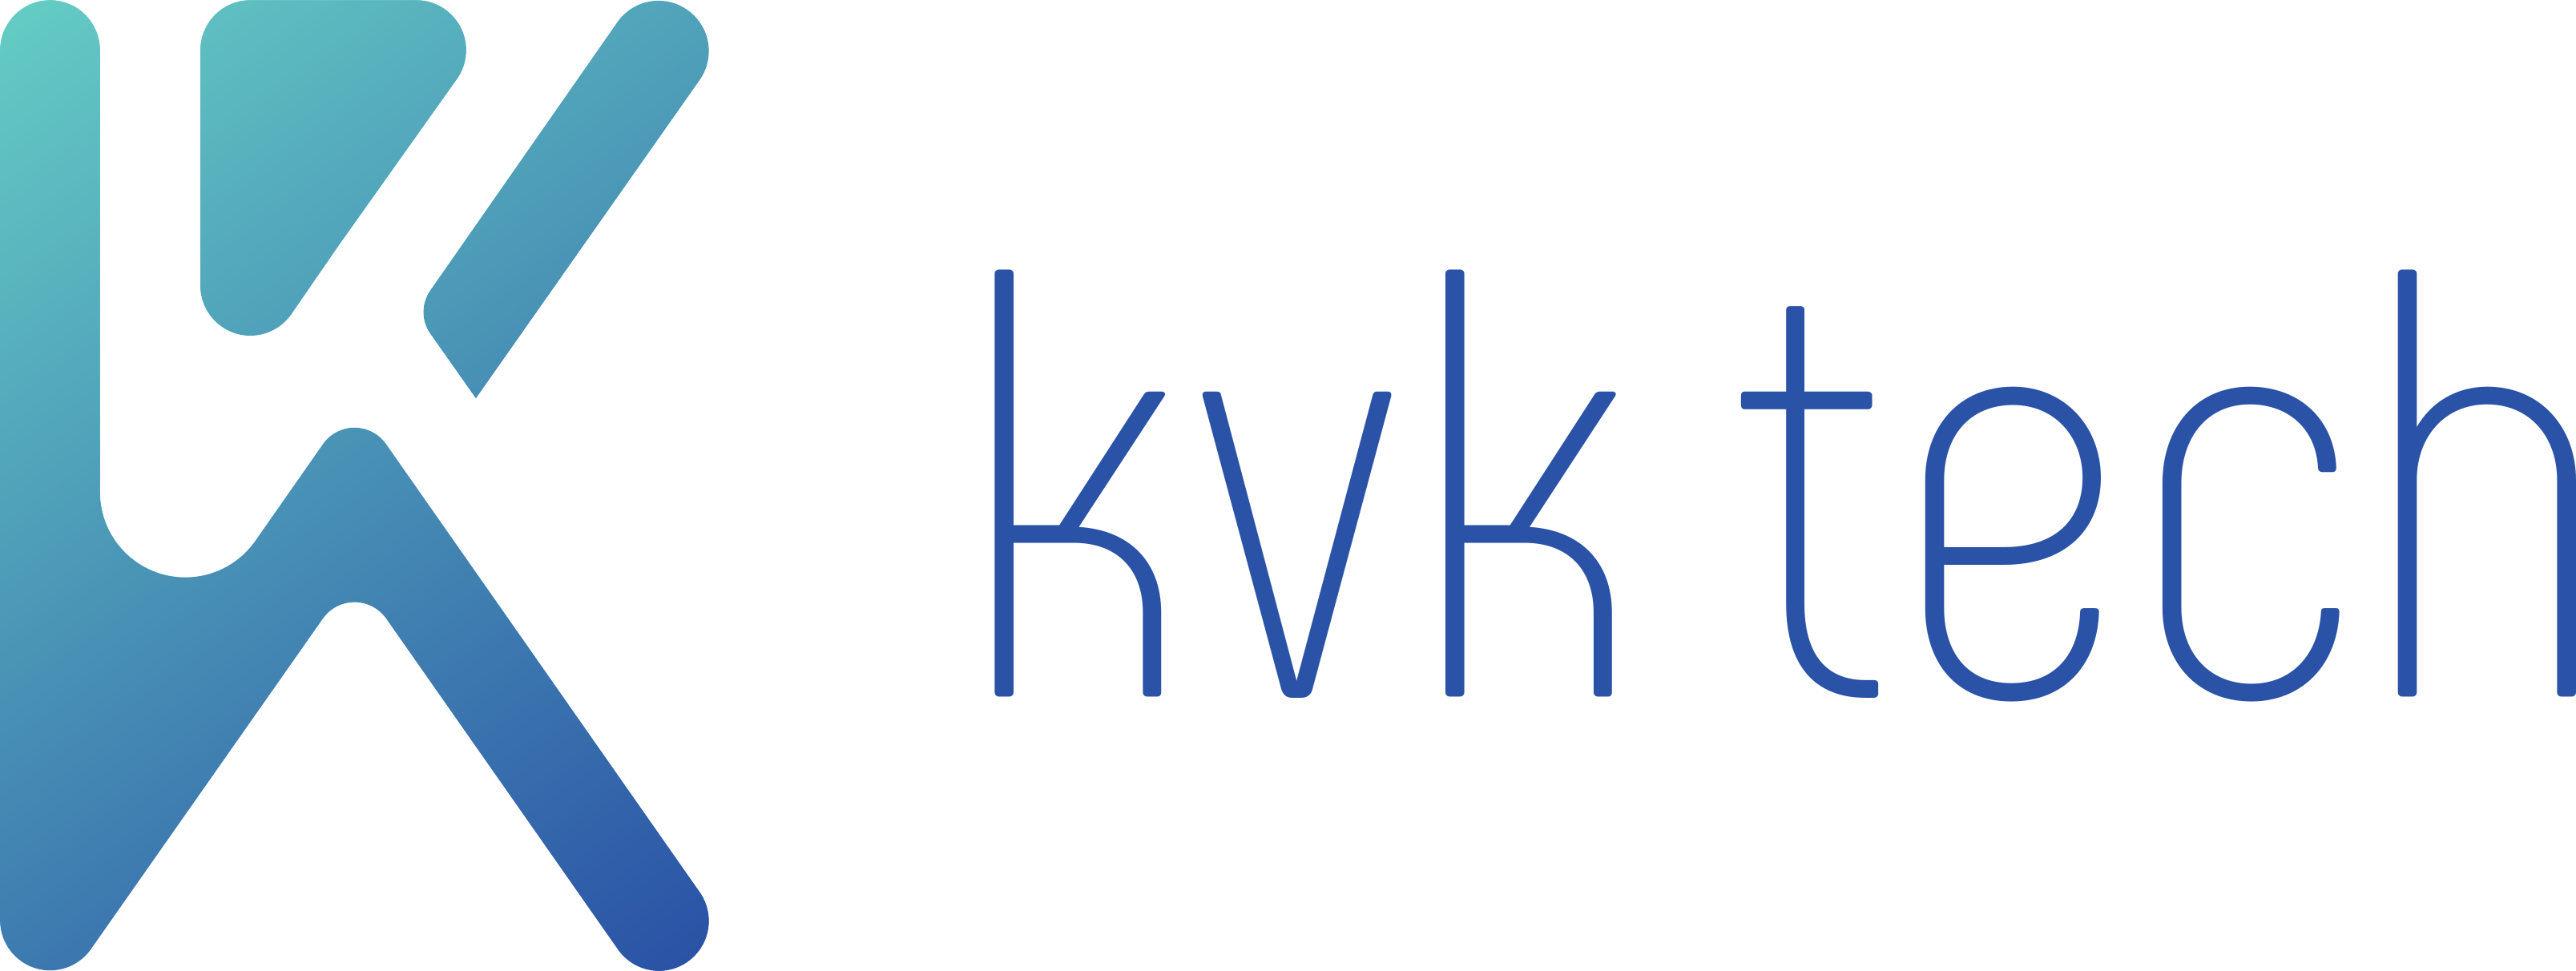 KVK Tech